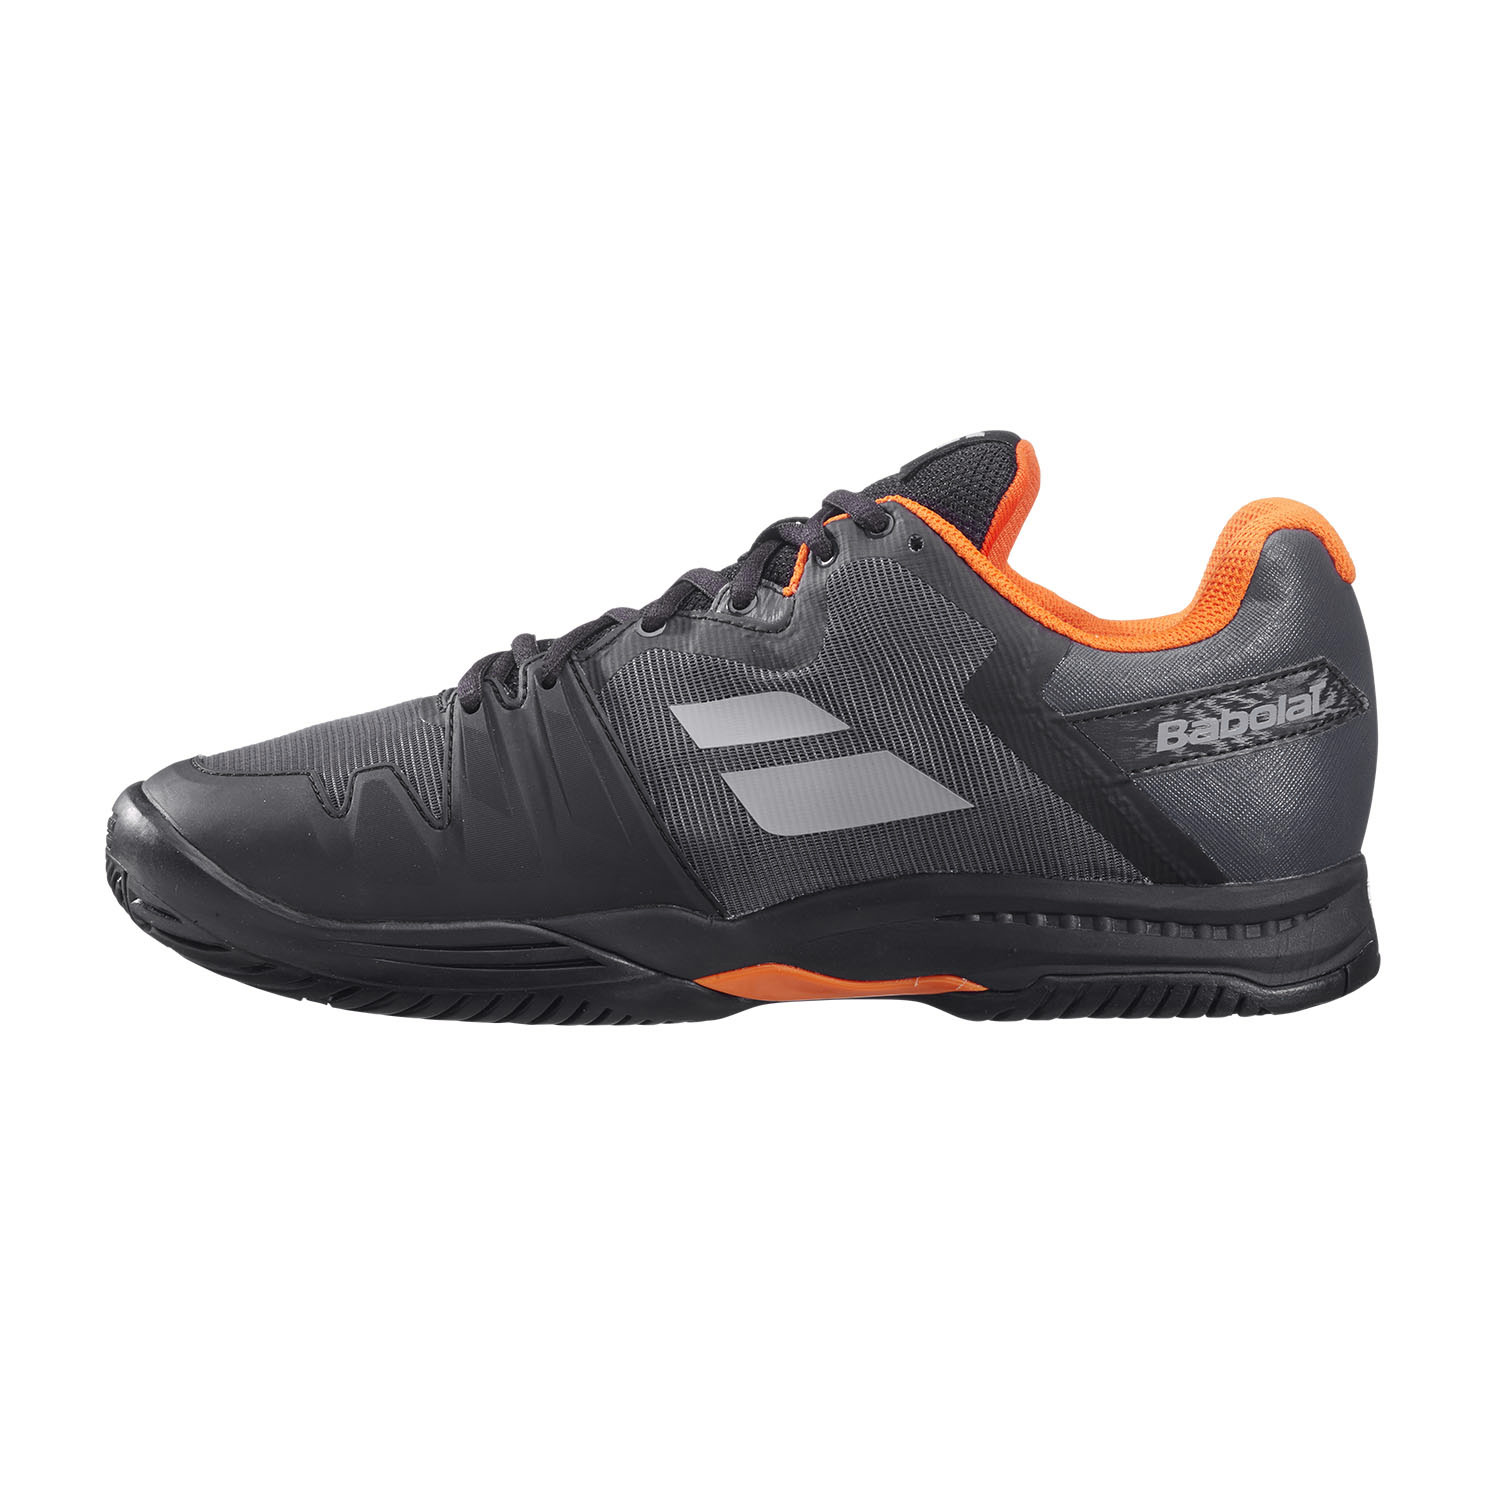 Babolat SFX3 All Court Men's Tennis Shoes - Black/Orange